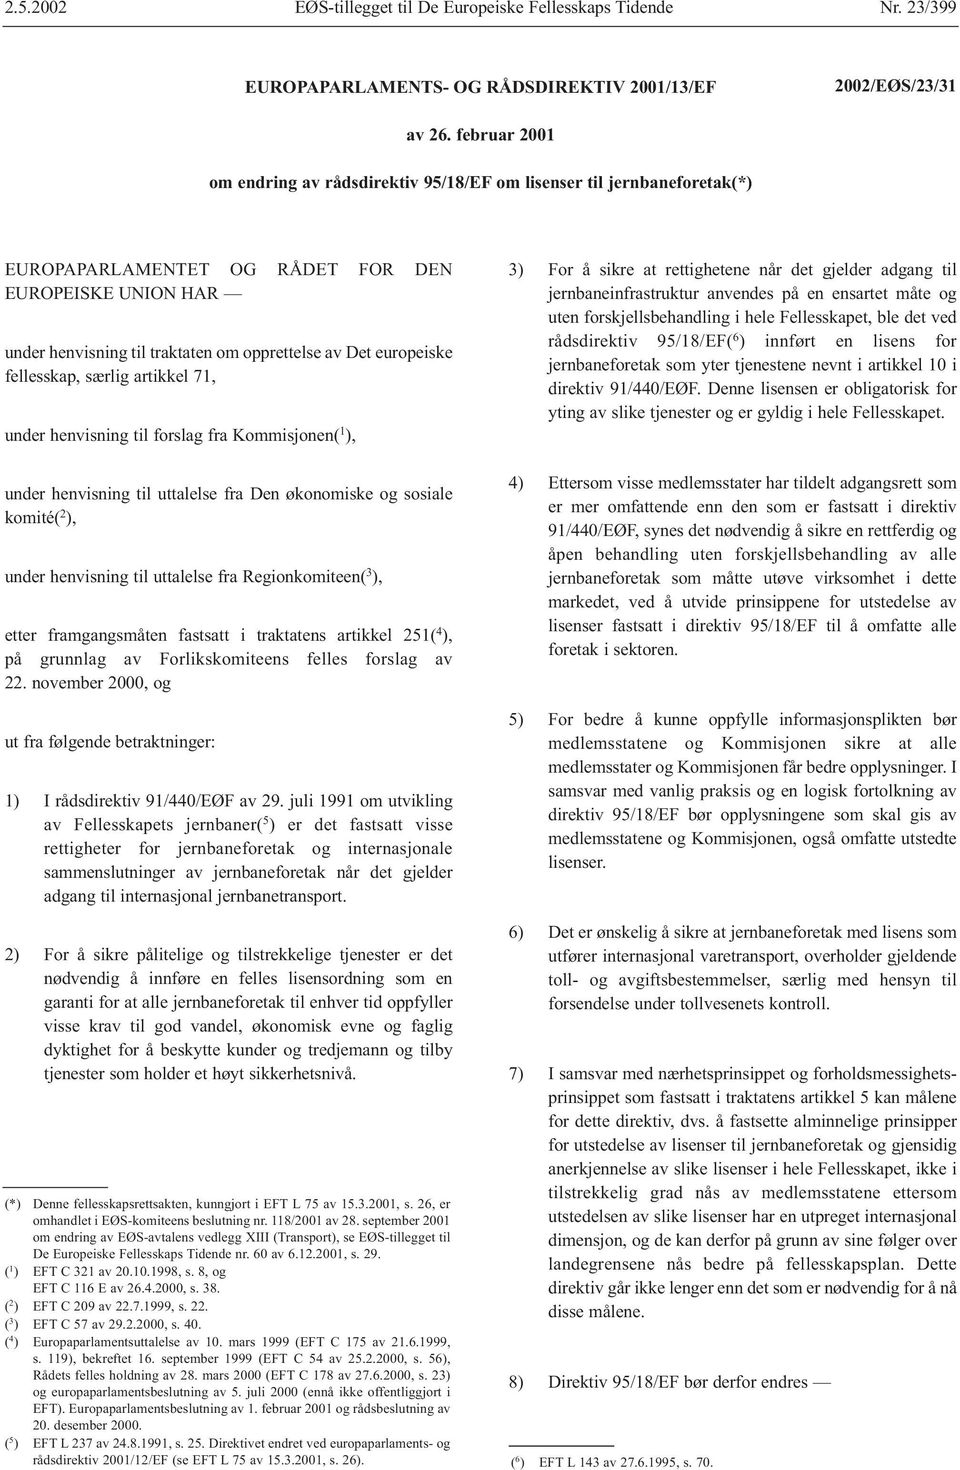 europeiske fellesskap, særlig artikkel 71, under henvisning til forslag fra Kommisjonen( 1 ), under henvisning til uttalelse fra Den økonomiske og sosiale komité( 2 ), under henvisning til uttalelse